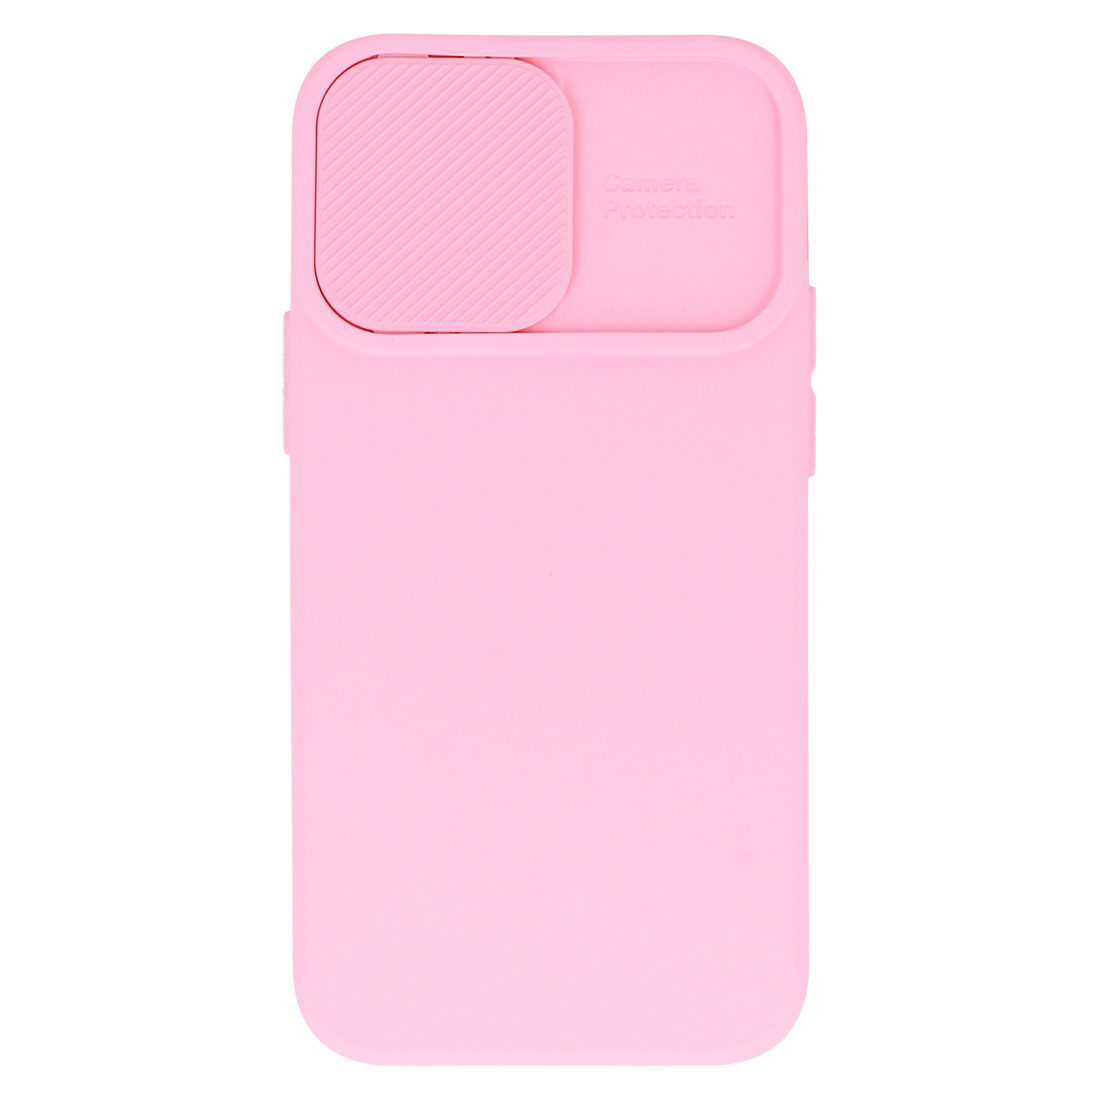 Pokrowiec etui z elastycznego TPU Camshield Soft Case jasnorowe APPLE iPhone SE 2020 / 6